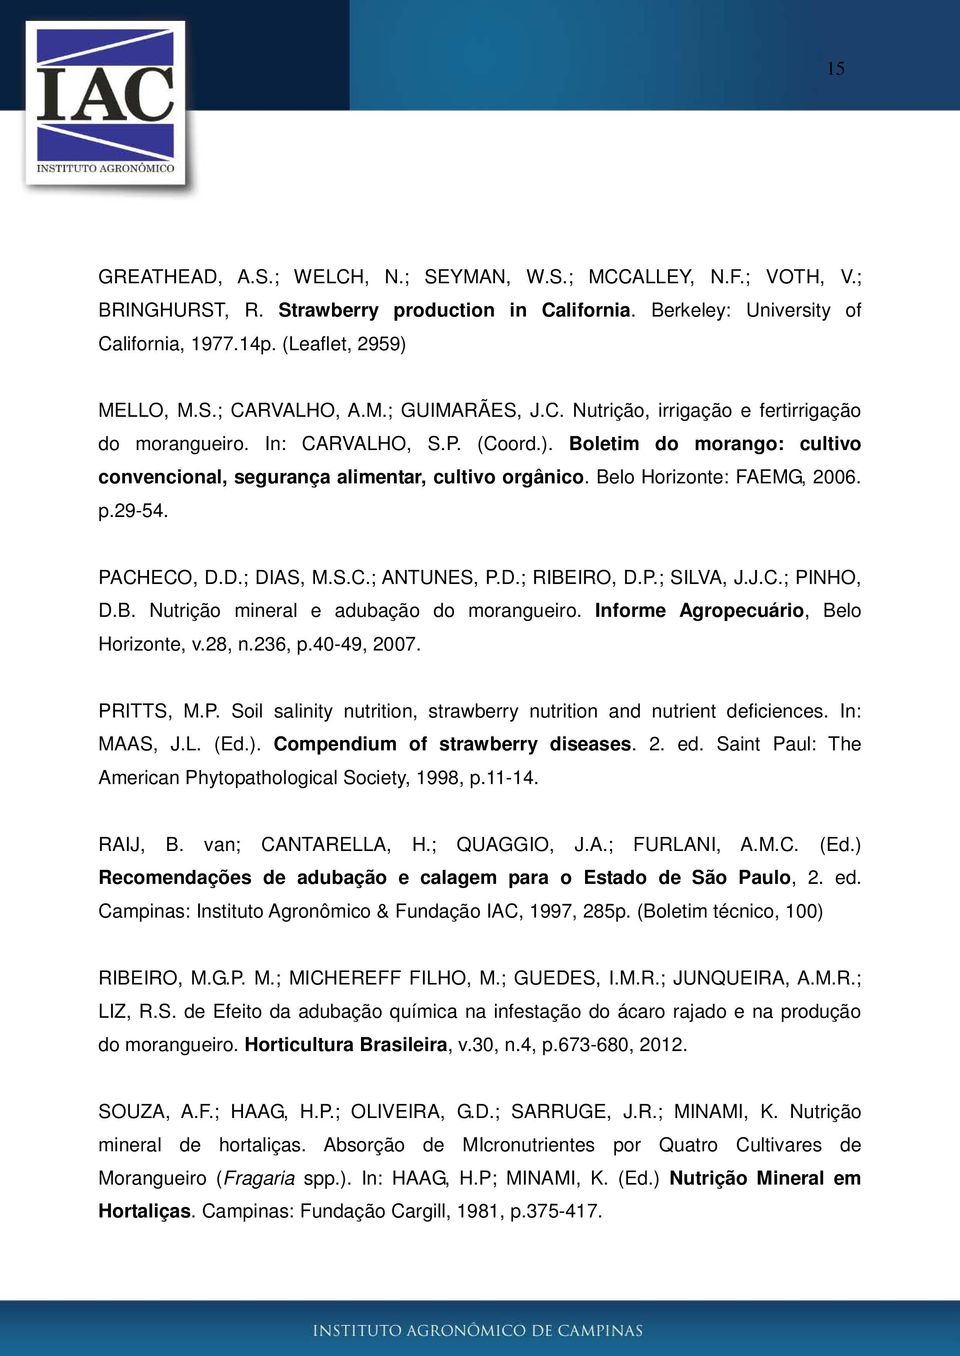 Belo Horizonte: FAEMG, 2006. p.29-54. PACHECO, D.D.; DIAS, M.S.C.; ANTUNES, P.D.; RIBEIRO, D.P.; SILVA, J.J.C.; PINHO, D.B. Nutrição mineral e adubação do morangueiro.